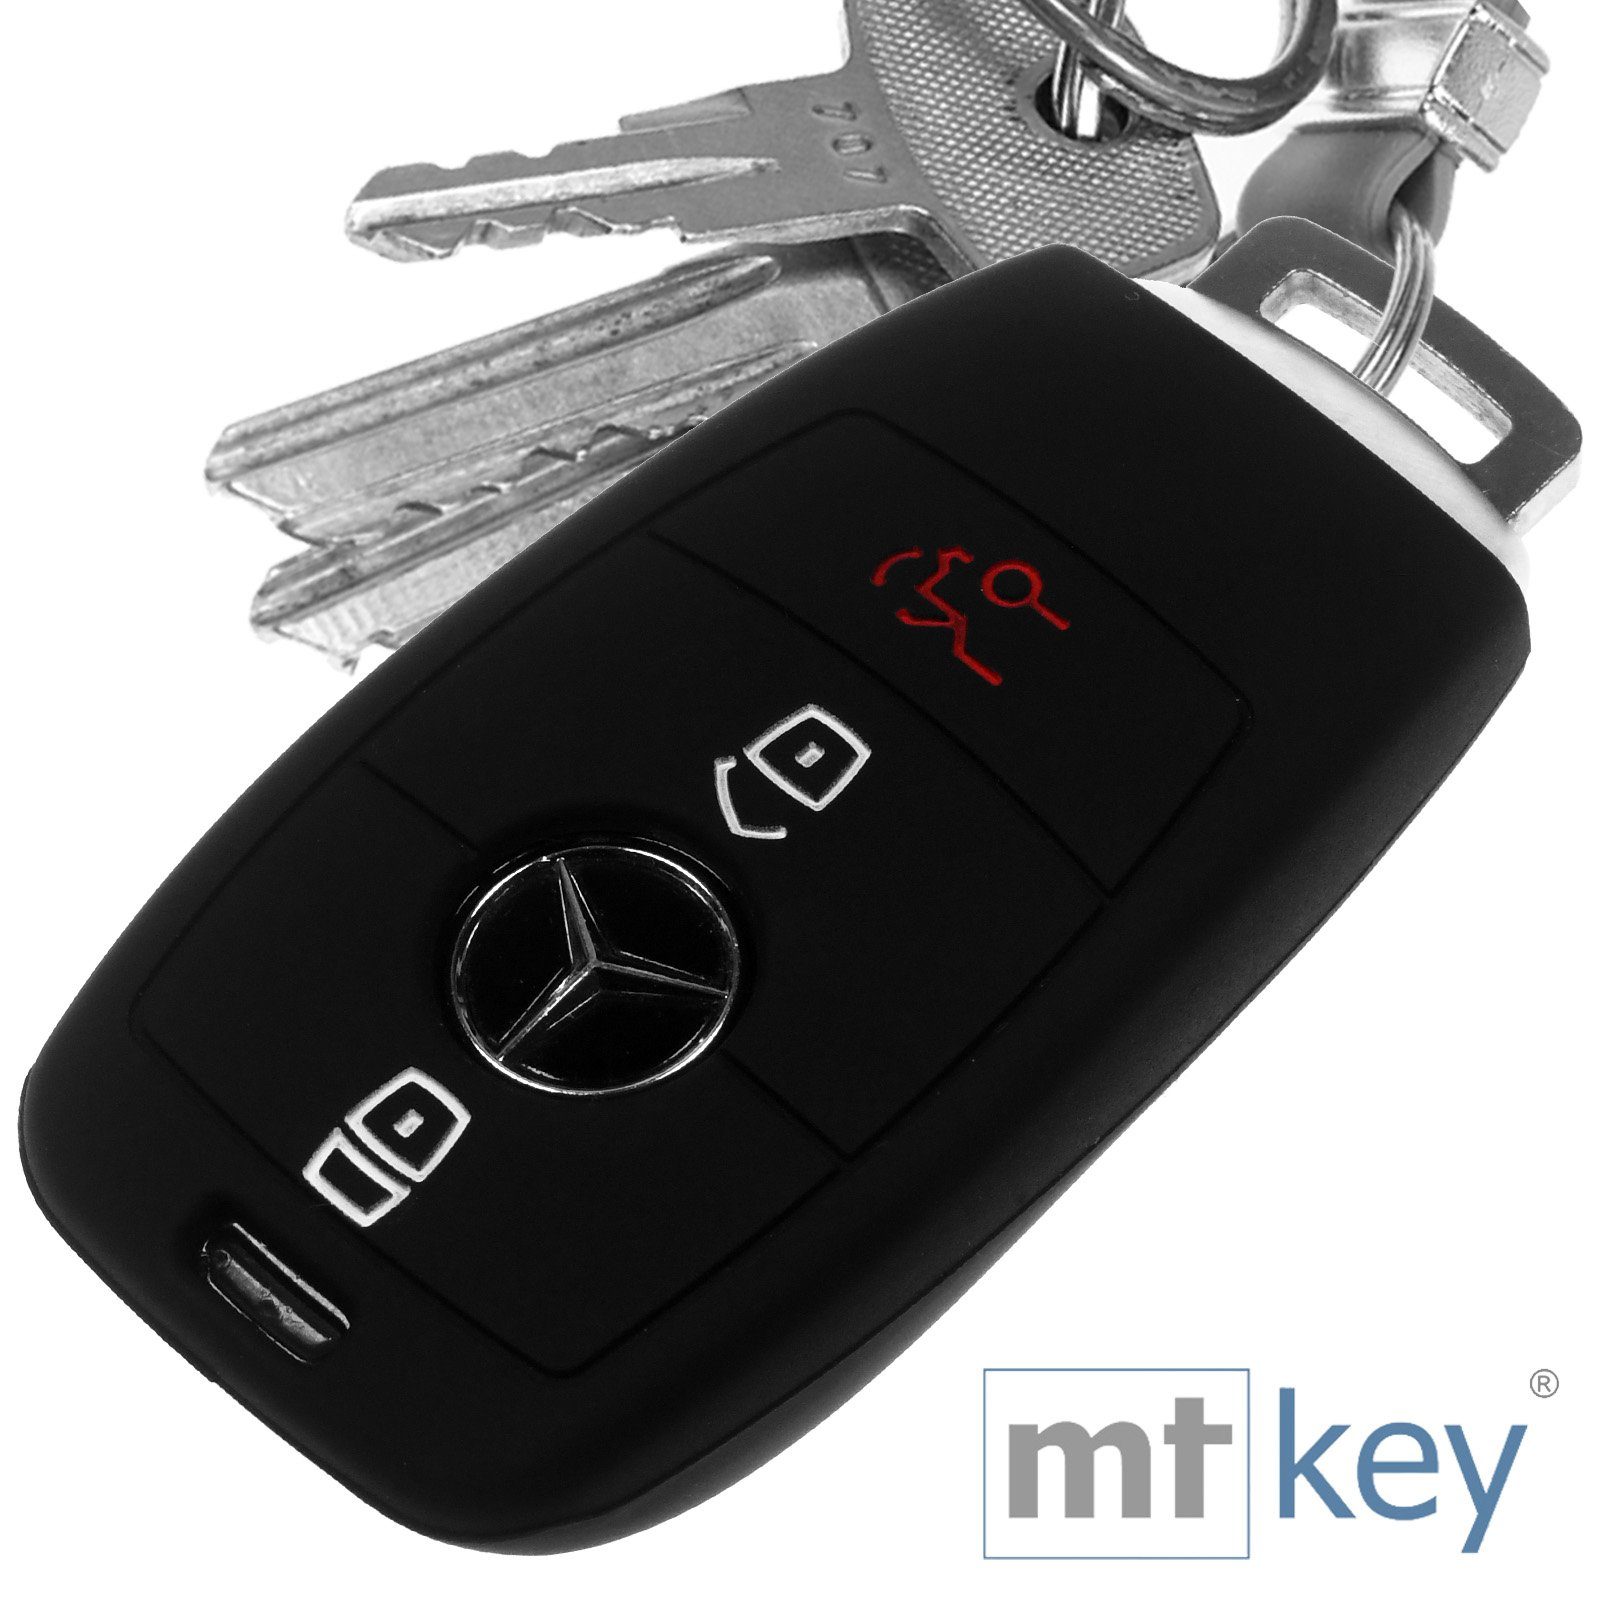 Autoschlüssel Hülle kompatibel mit Mercedes Benz 3-Tasten Smart Autos